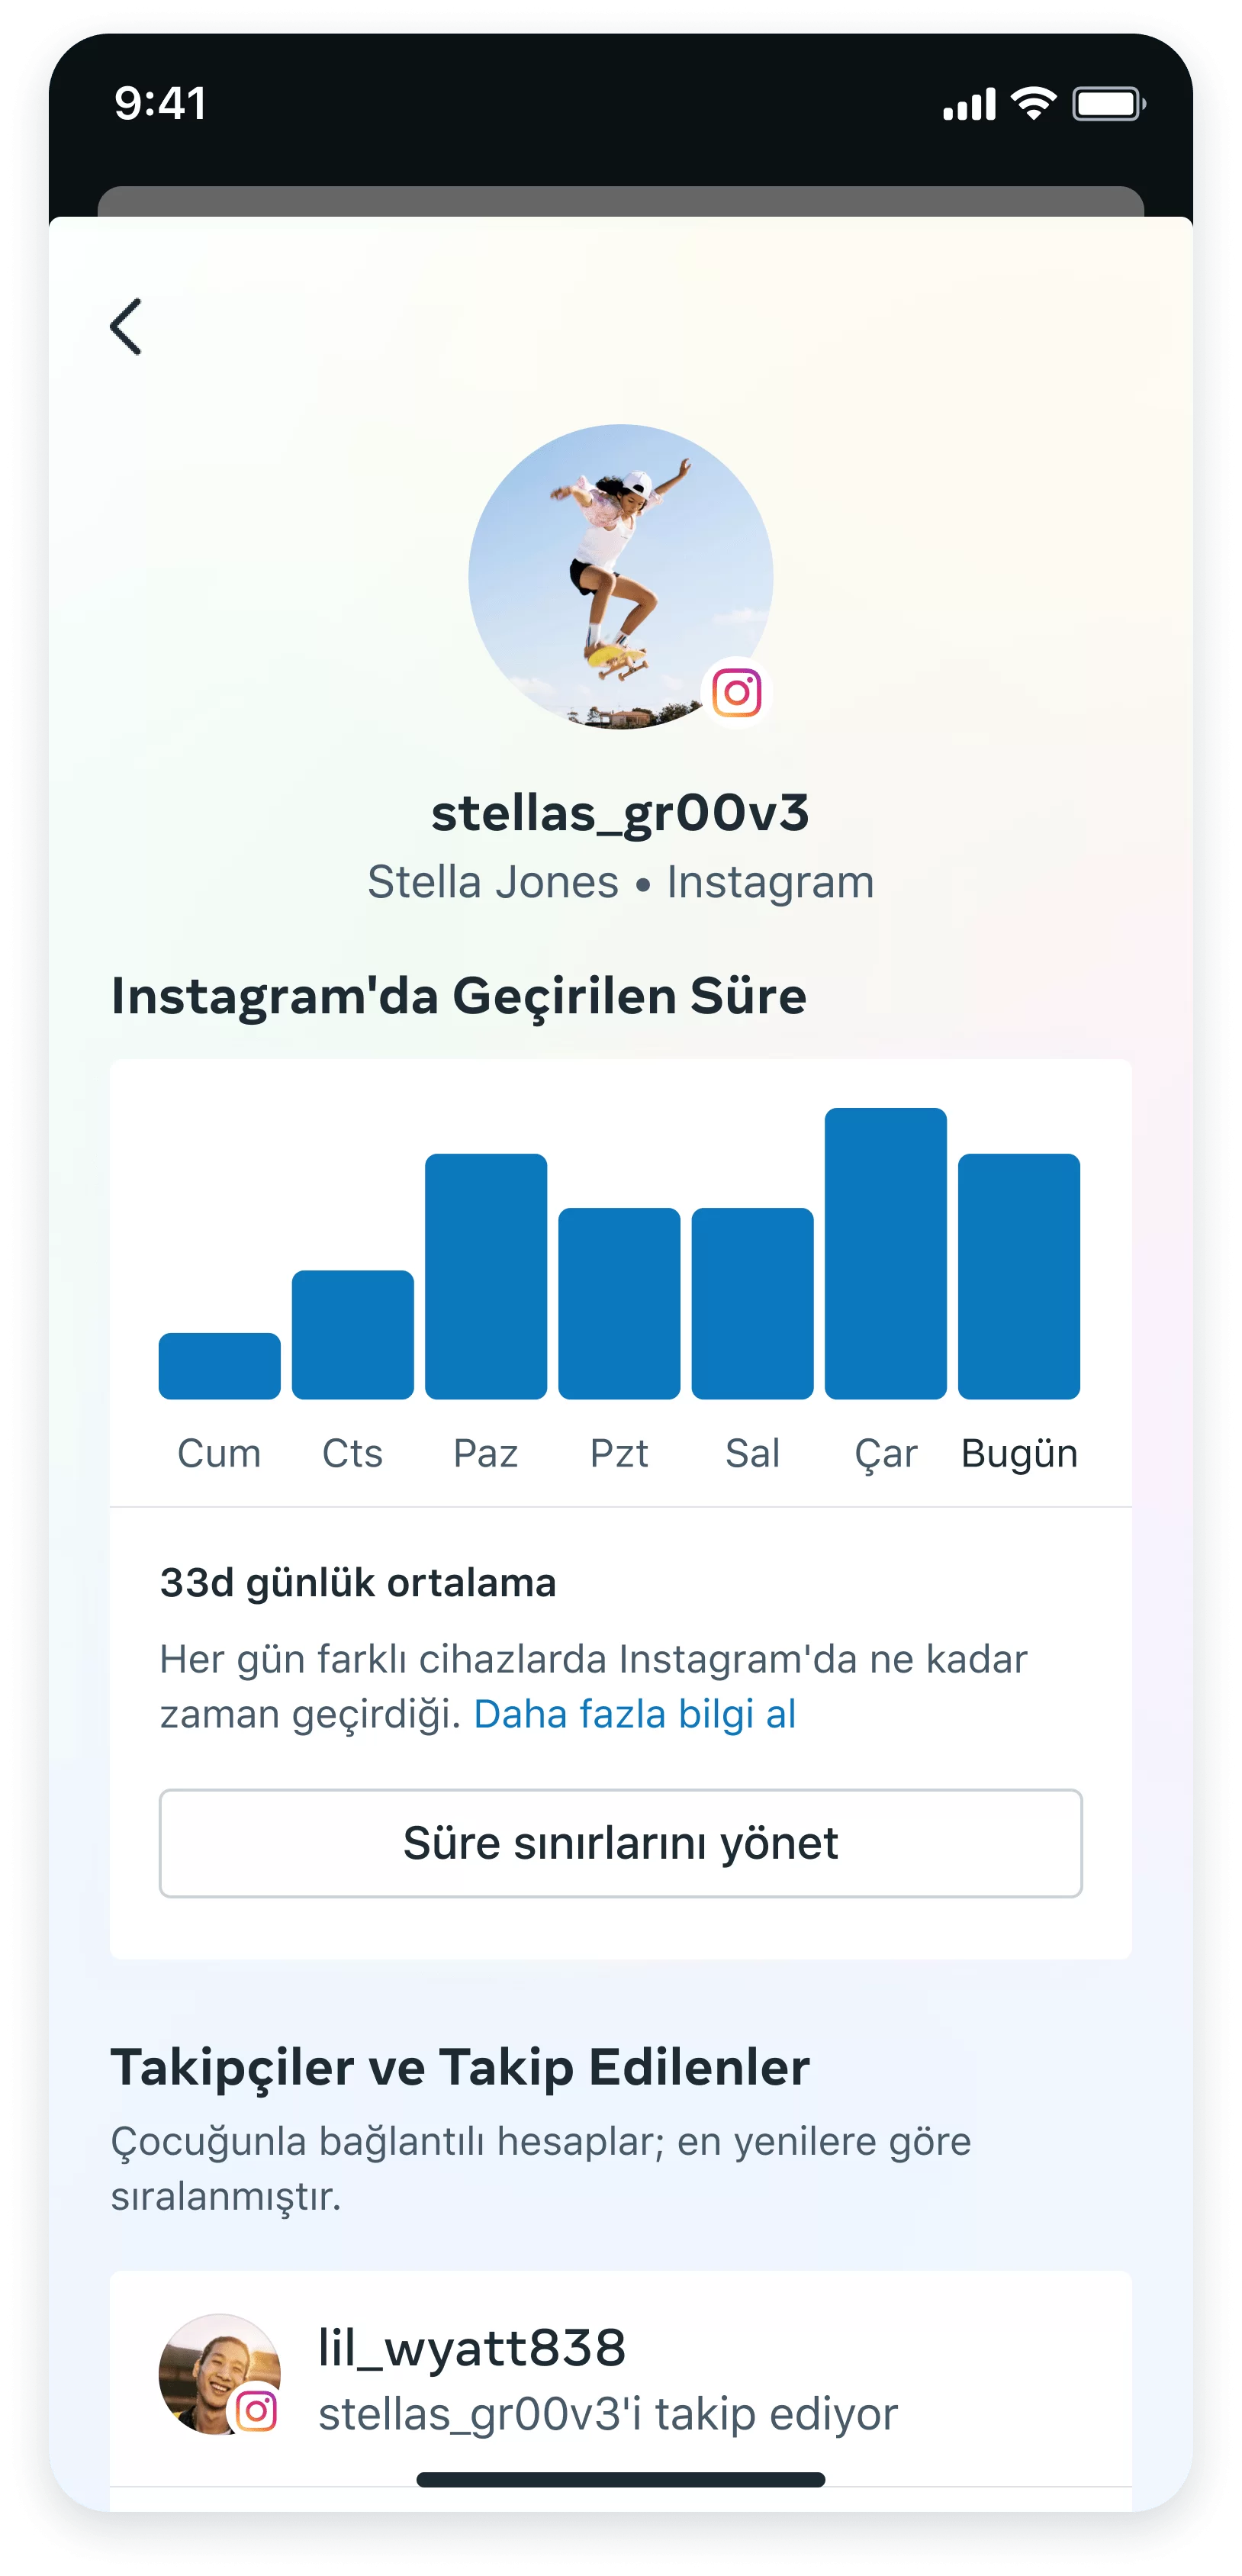 Instagram Aile Merkezi özelliği üzerinden zaman kontrolü